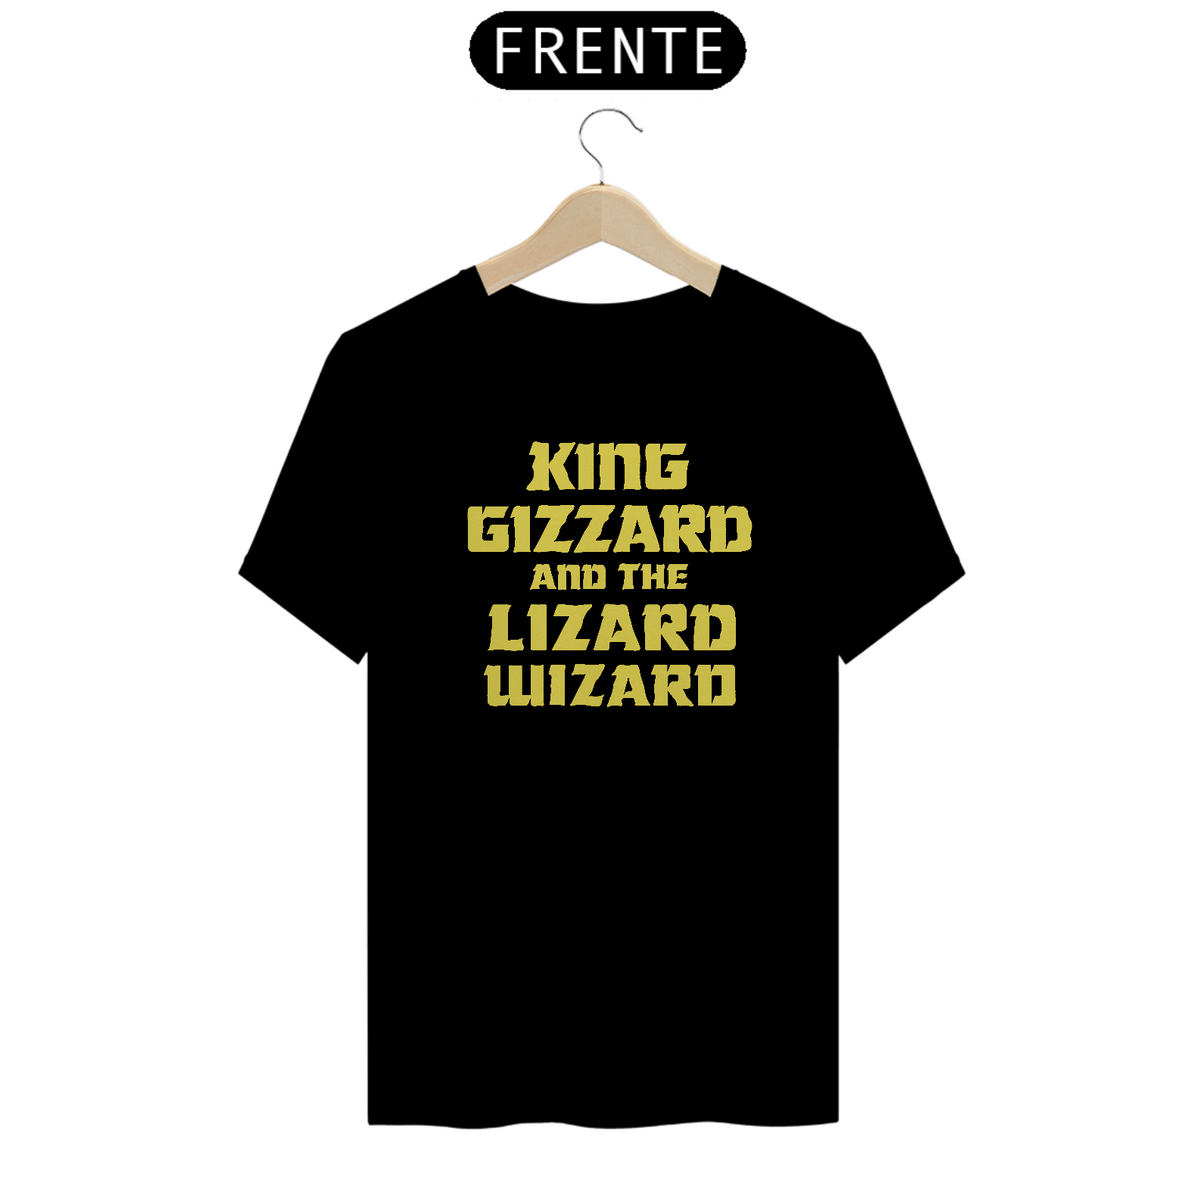 Nome do produto: King Gizzard and the Lizard Wizard